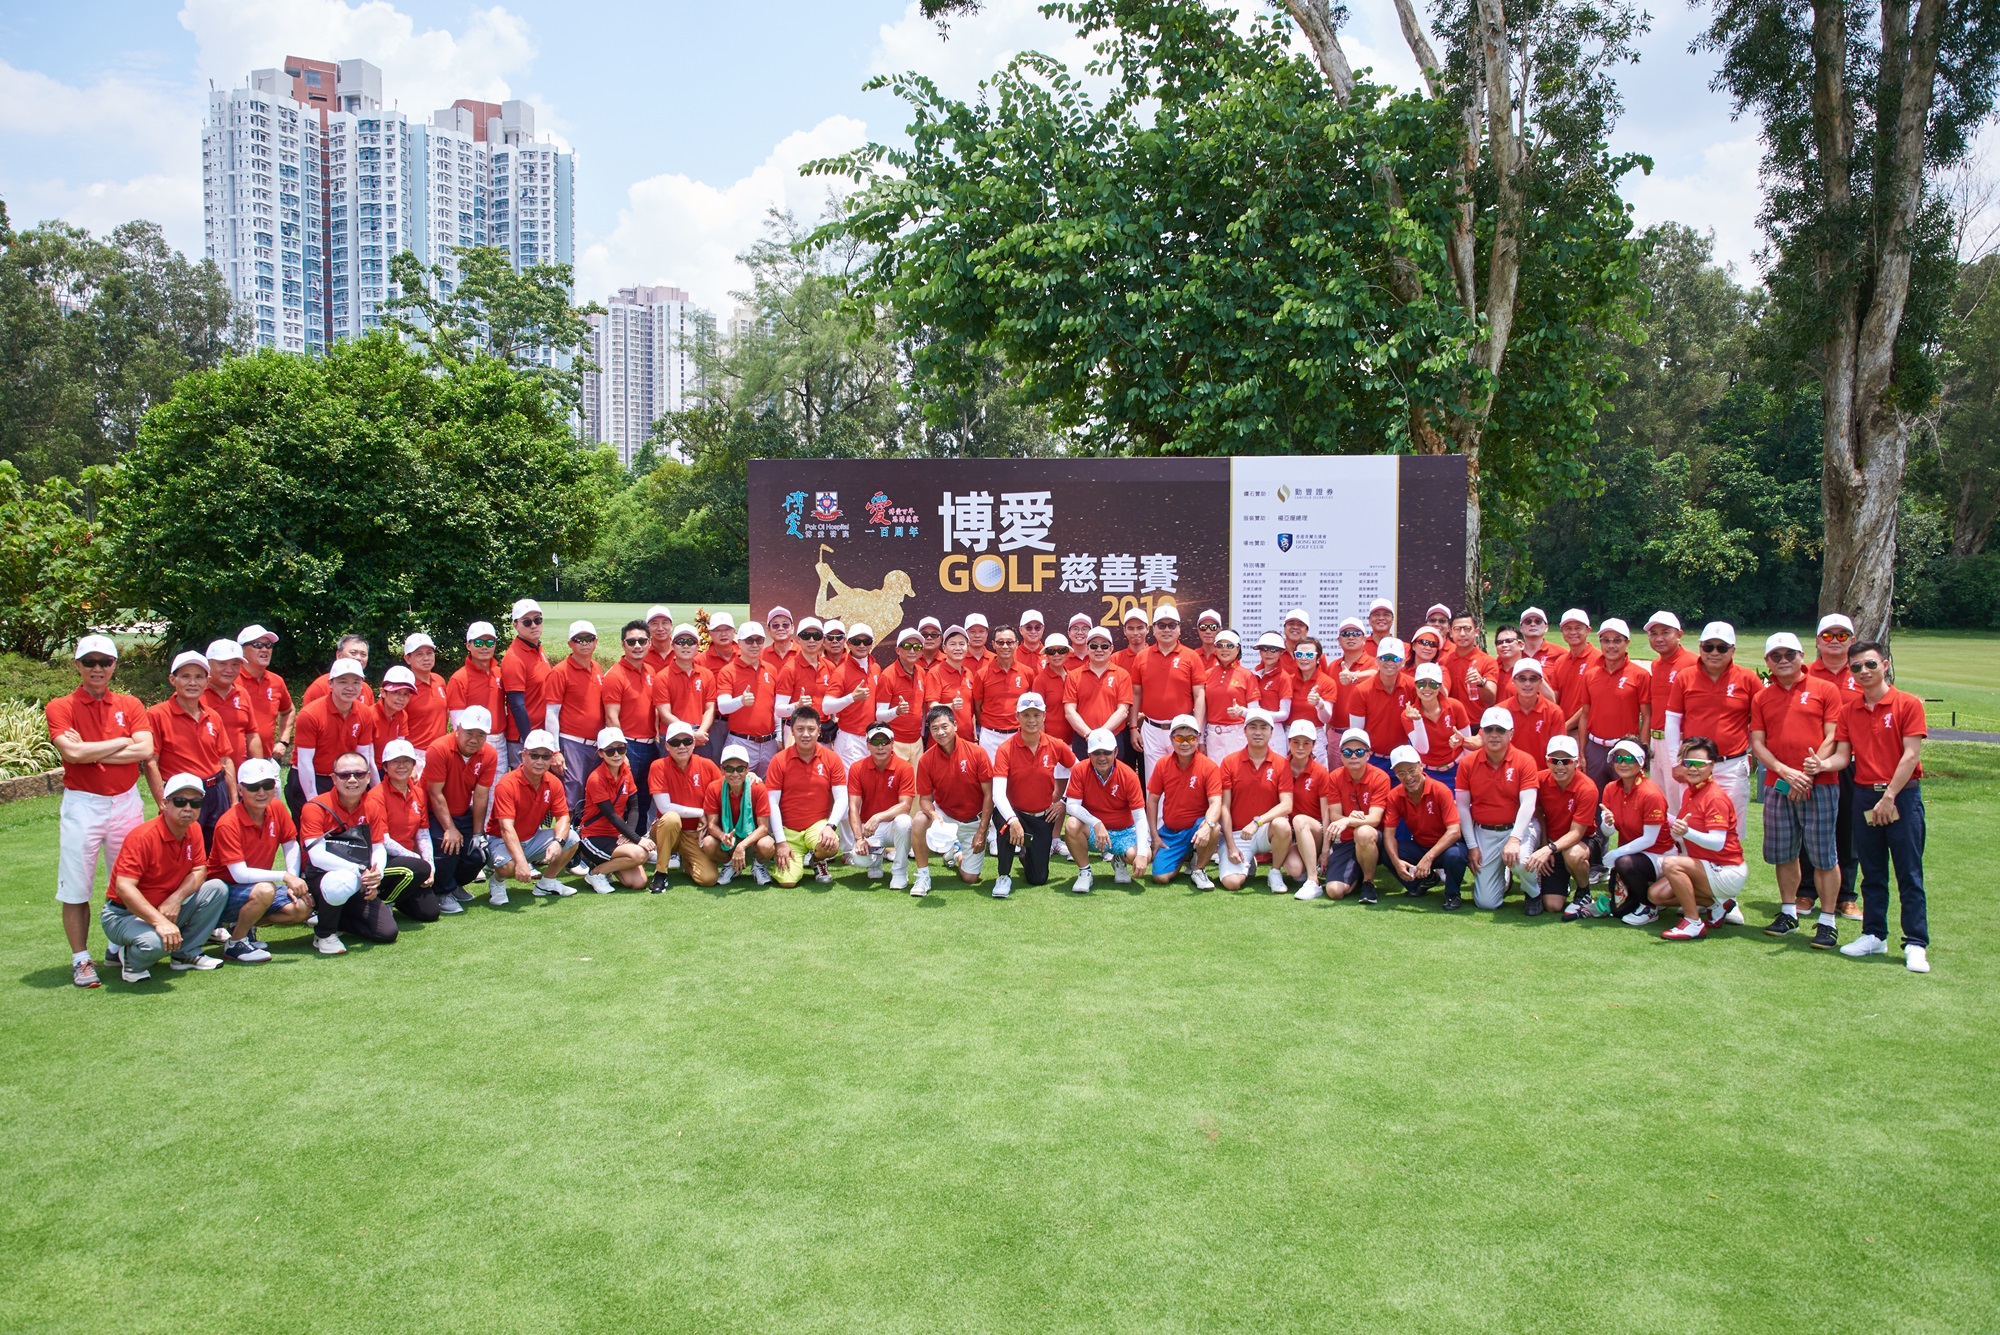 「博爱Golf慈善赛2019」圆满举行 逾百名高球爱好者云集　共襄善举　传扬善心